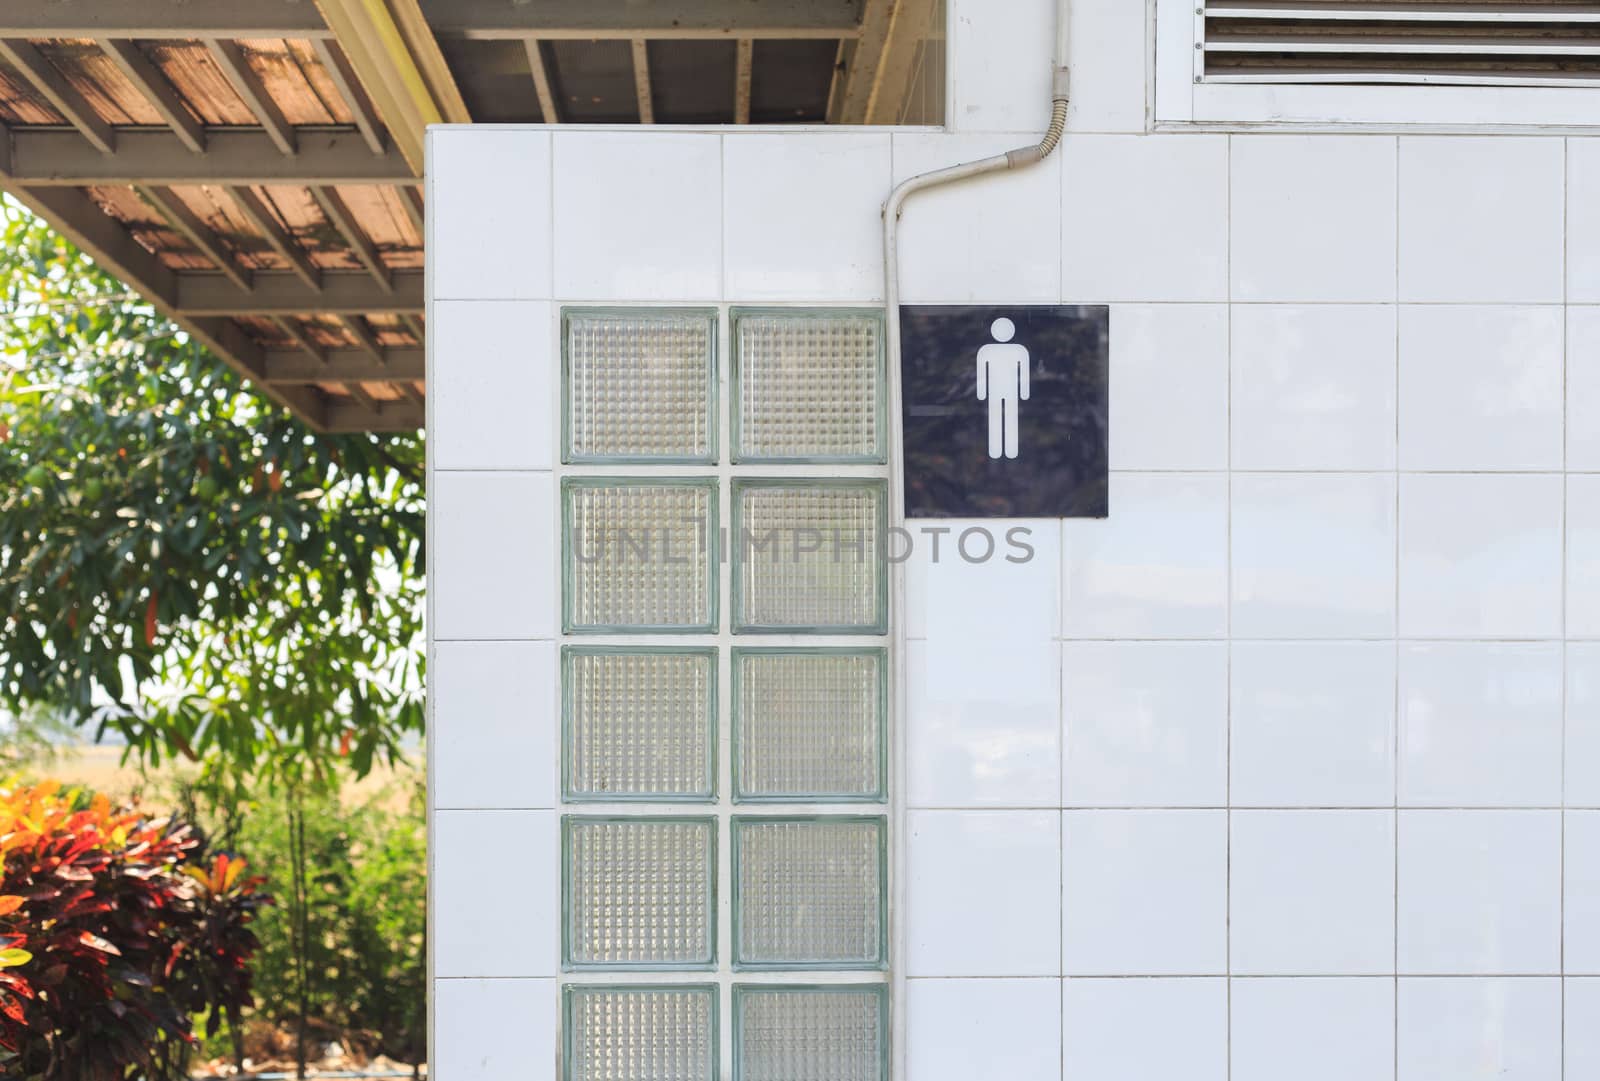 Entrance of the men public toilet